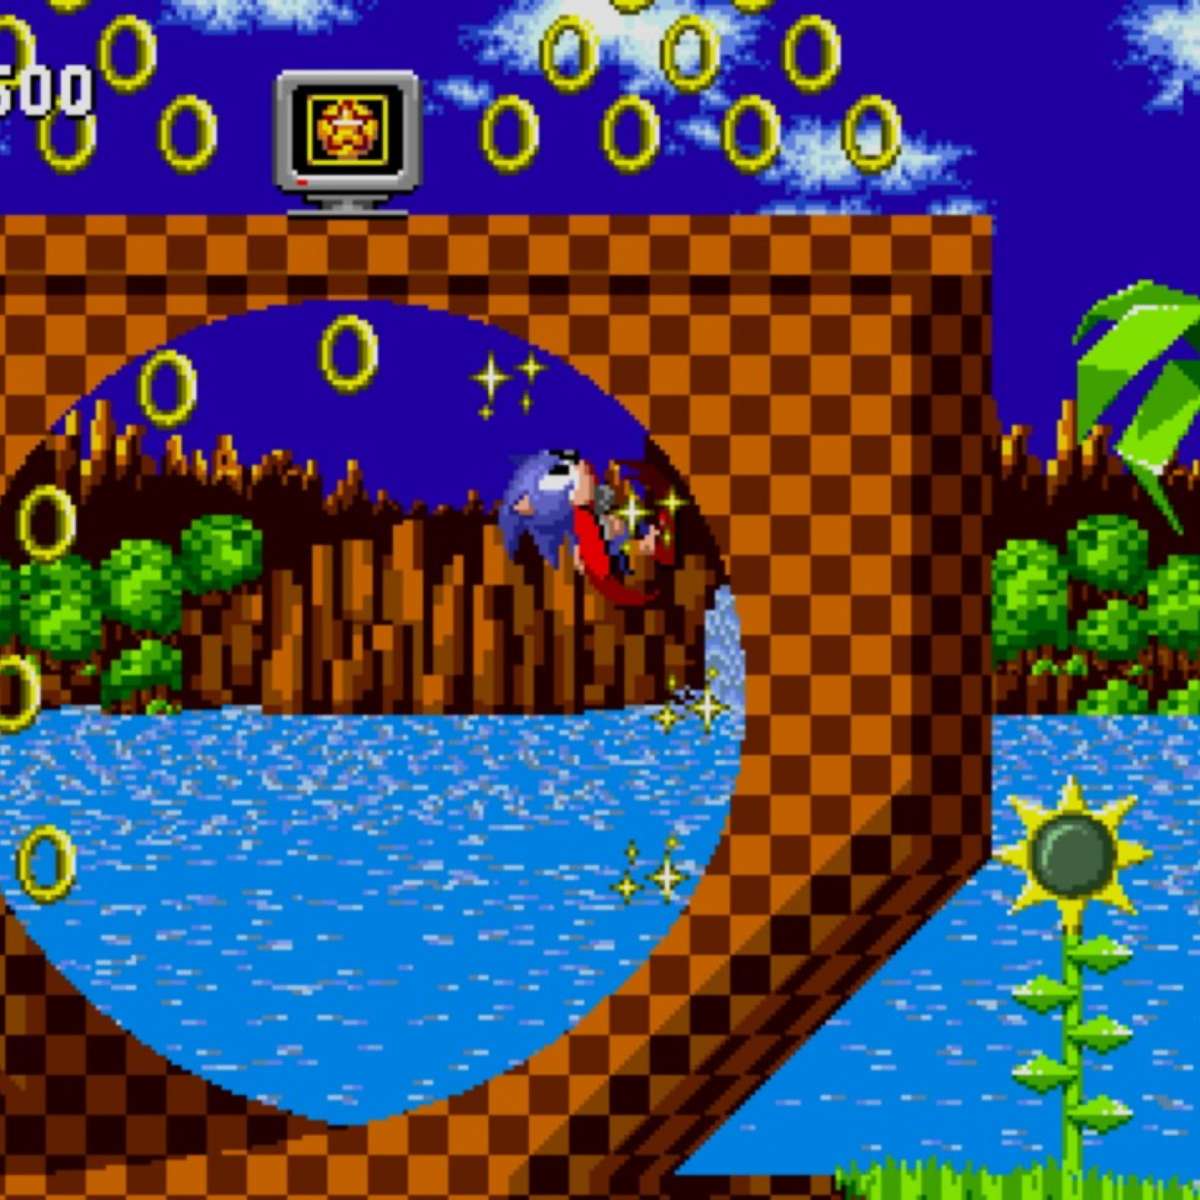 Relembre os melhores jogos clássicos em 2D do Sonic